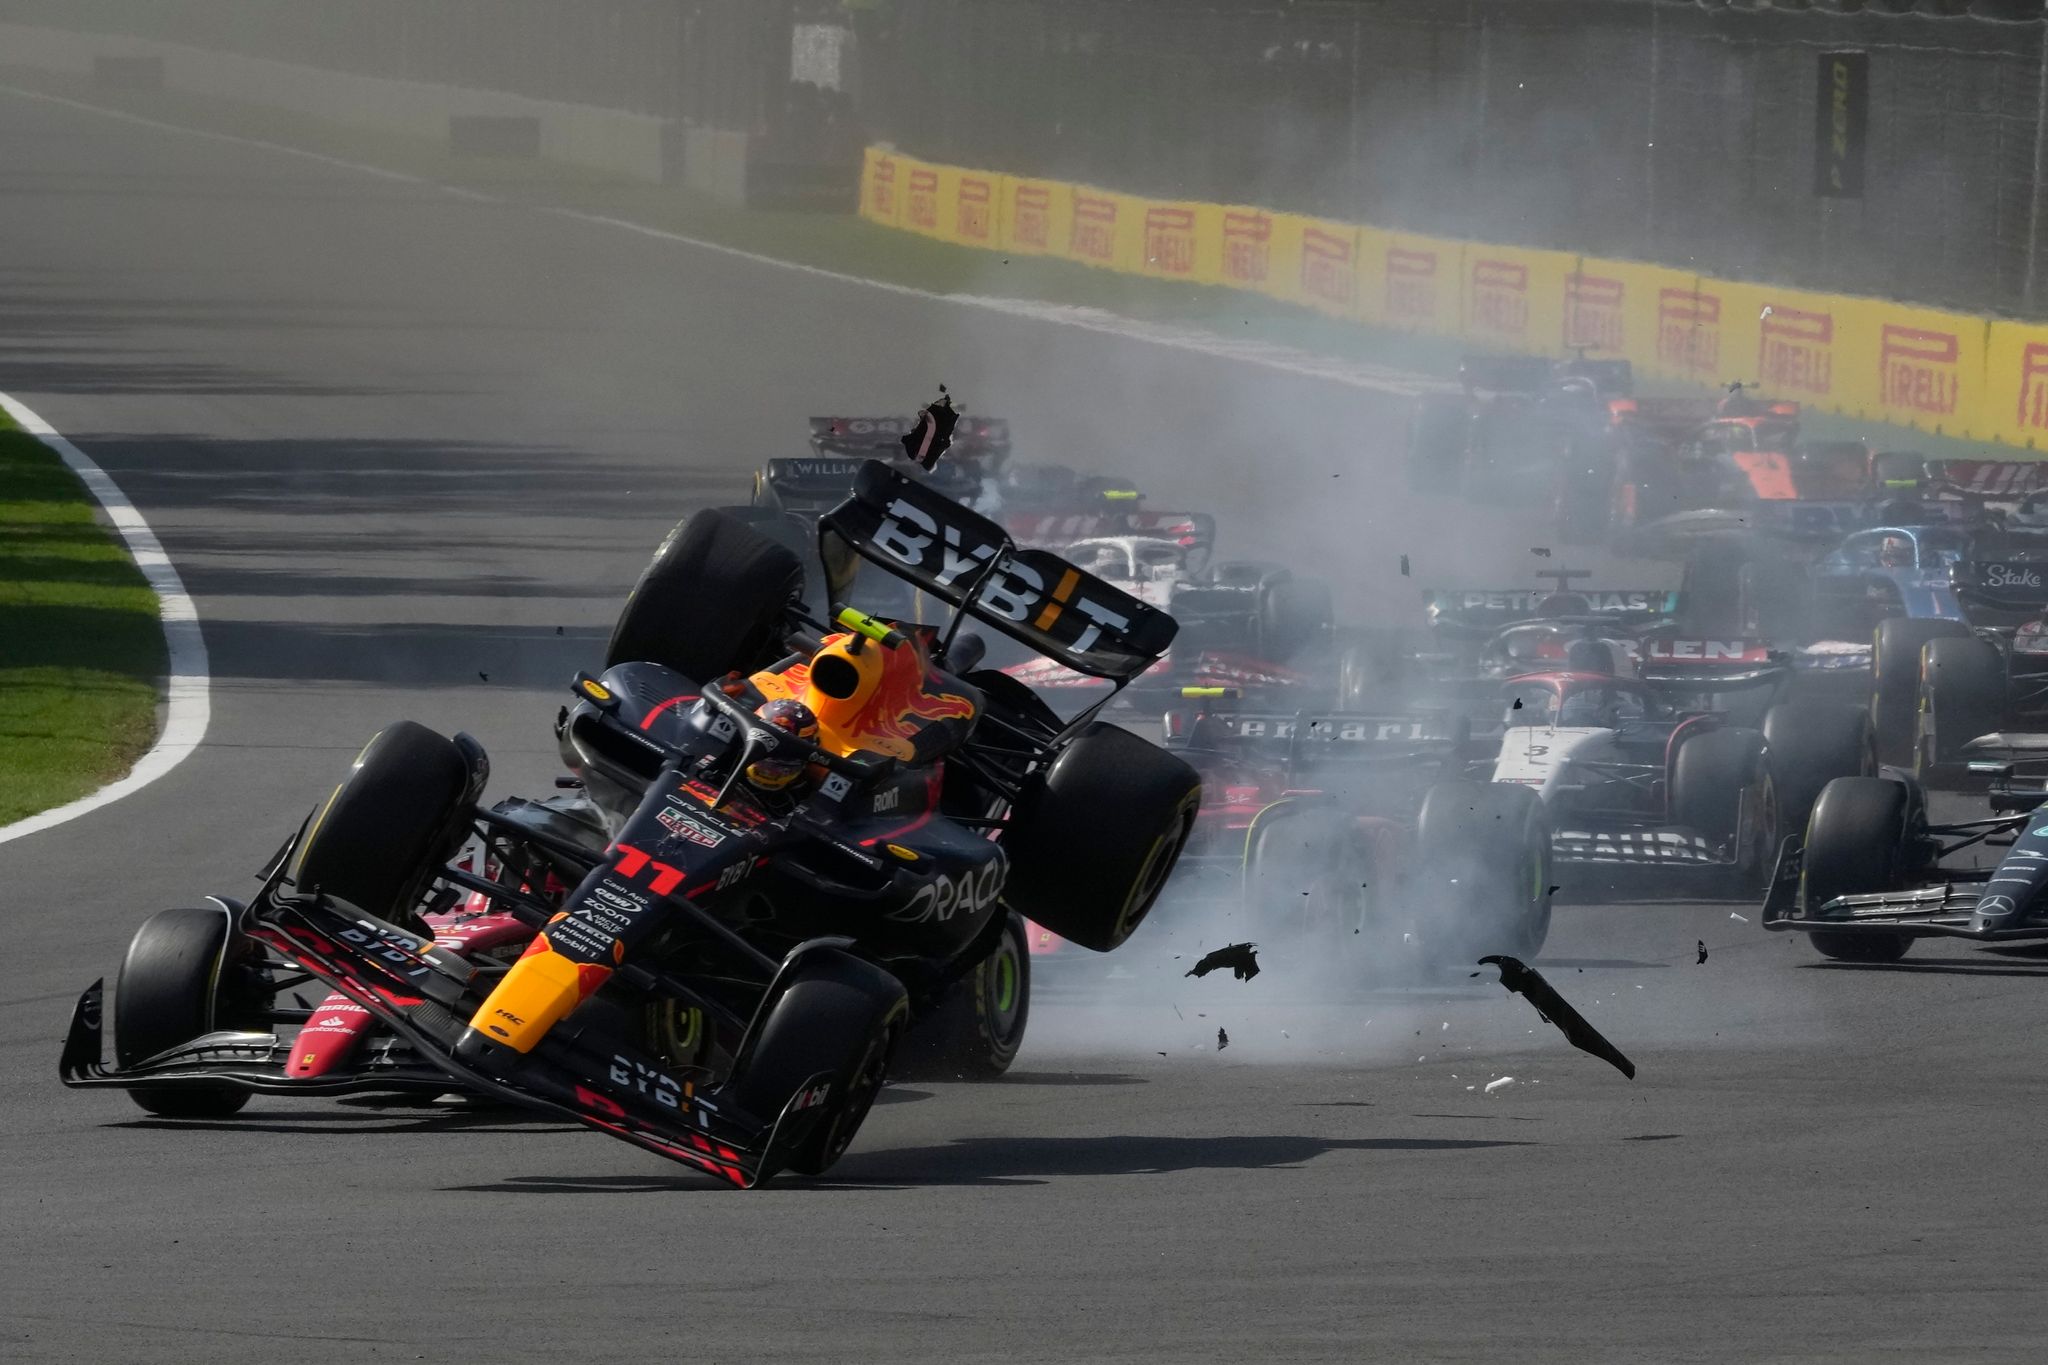 Nach einer gefährlichen Kollision fliegt der hintere Teil des Wagens von Red-Bull-Fahrer Sergio Perez beim Formel-1-Rennen von Mexiko in die Luft.